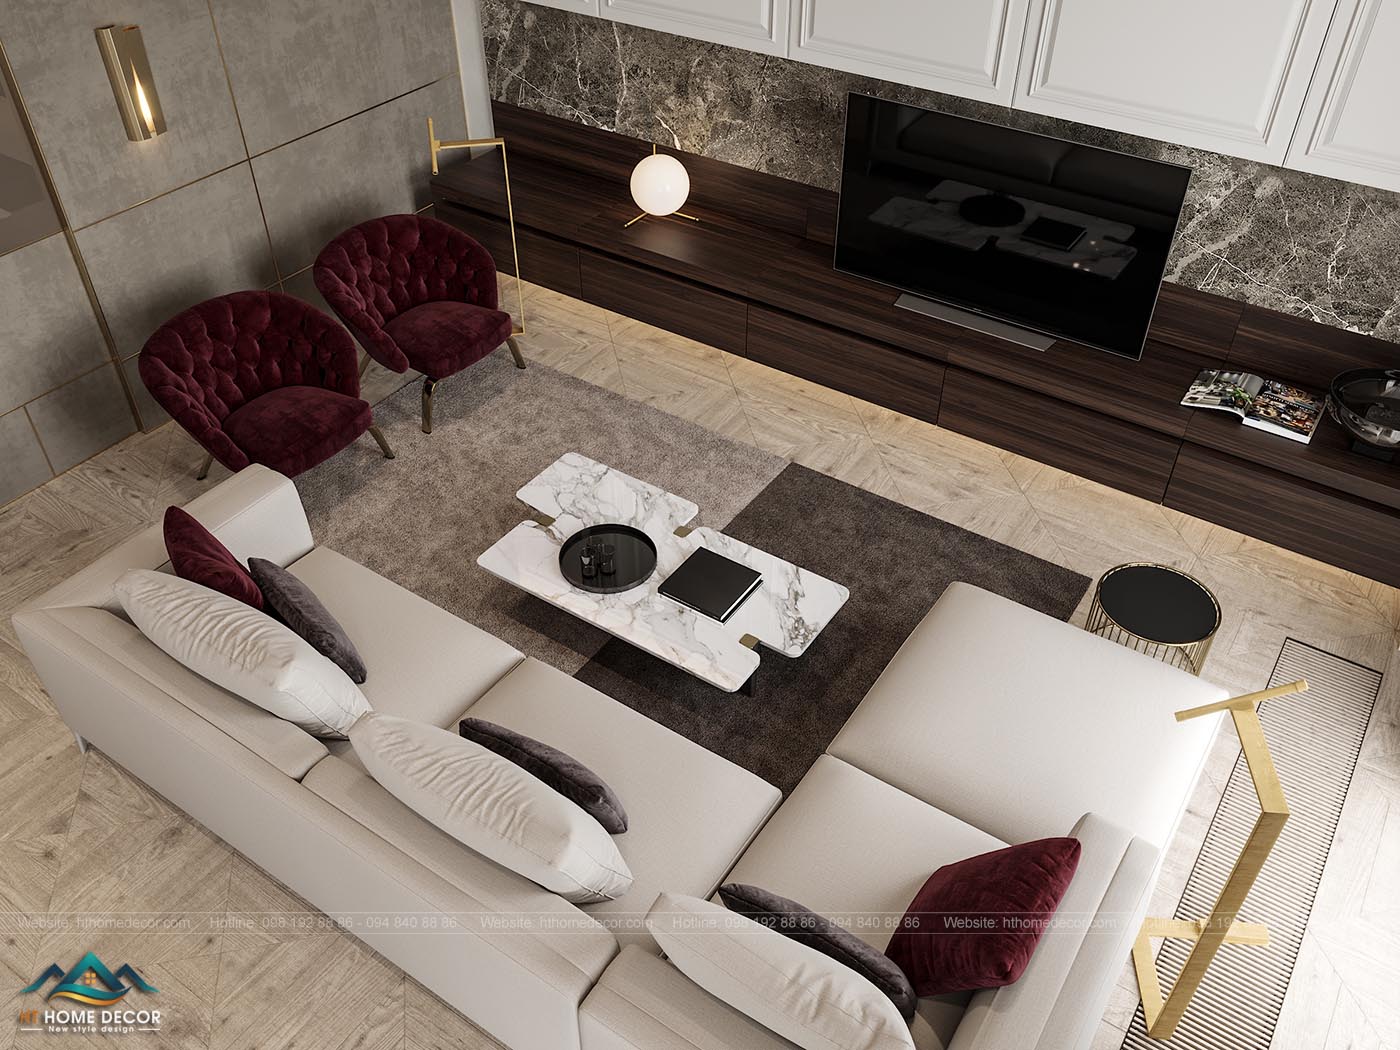 Phòng khách với đầy đủ những tiện nghi từ ghế sofa, cho đến Tivi, và hệ thống đèn điện, ánh sáng tự nhiên. Tone màu trắng và nâu gỗ và ghi xám đặc biệt được kết hợp trong thiết kế nội thất chung cư cao cấp